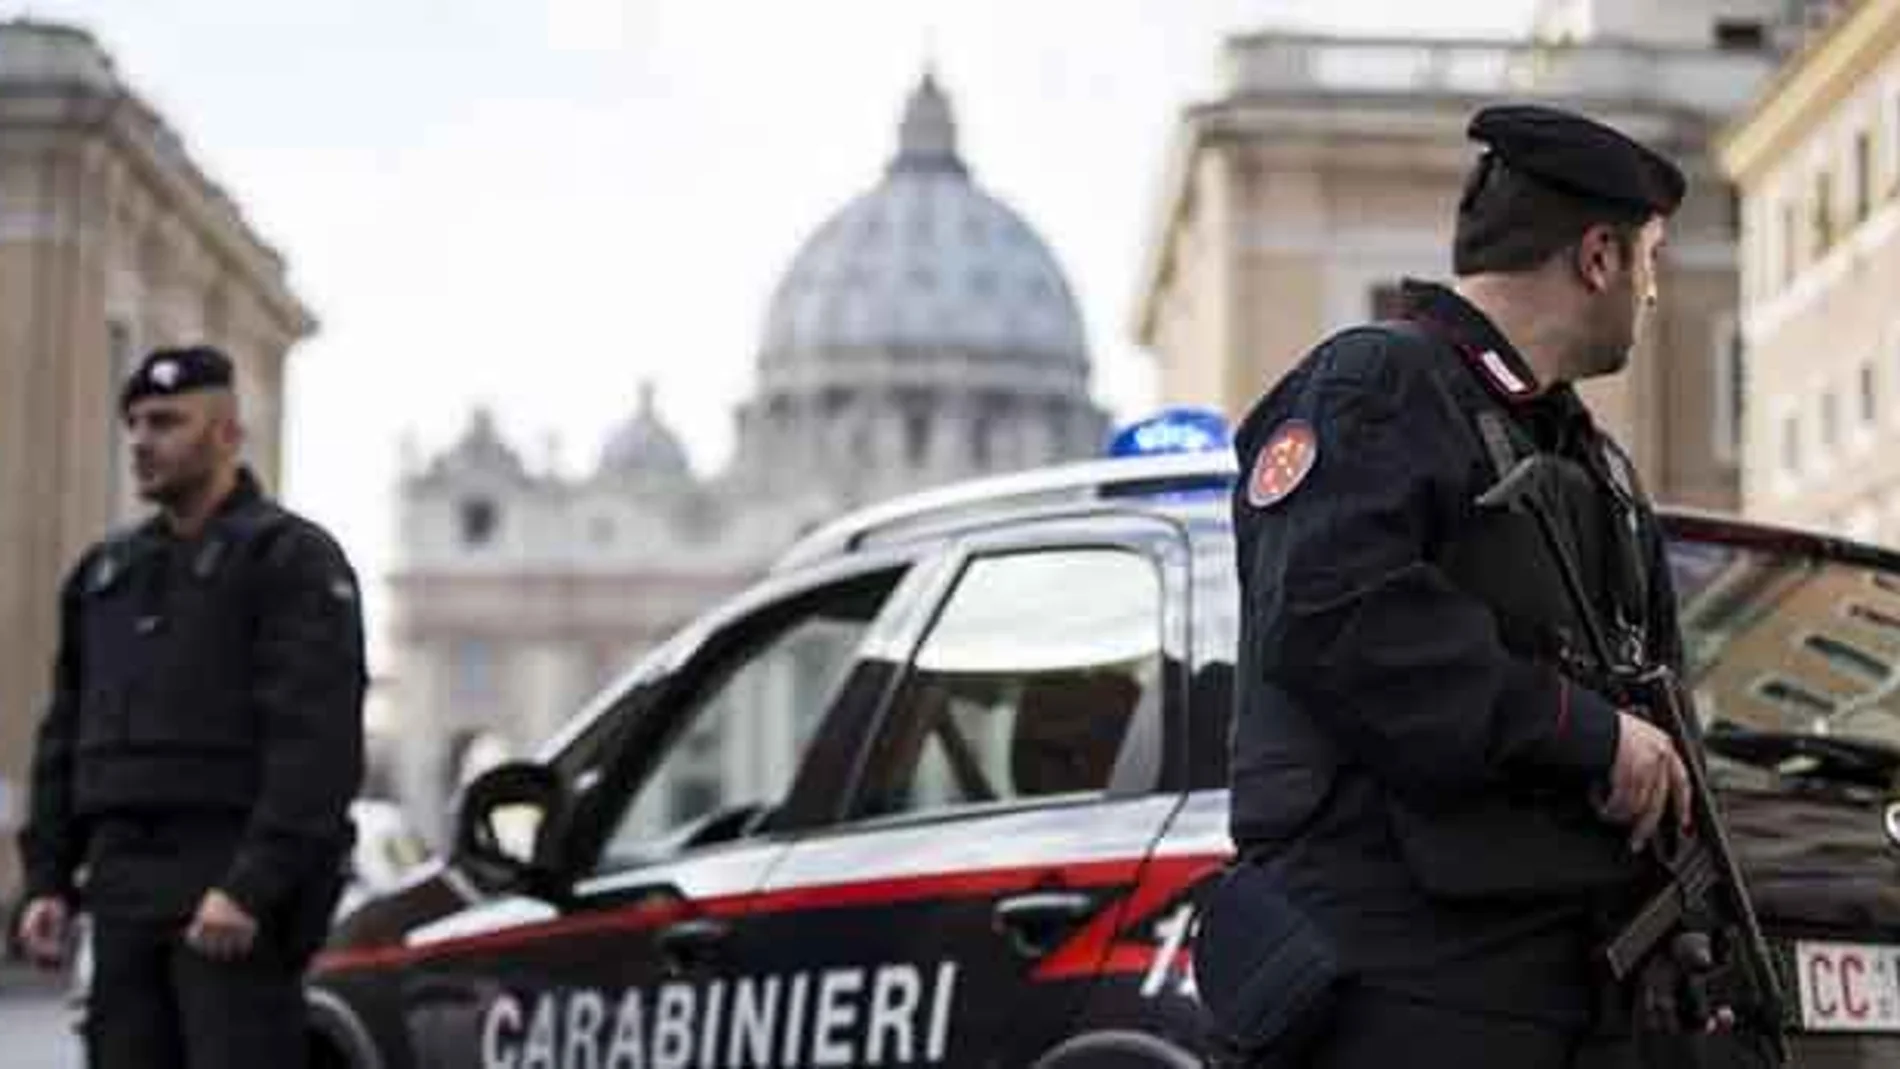 Carabinieri en El Vaticano